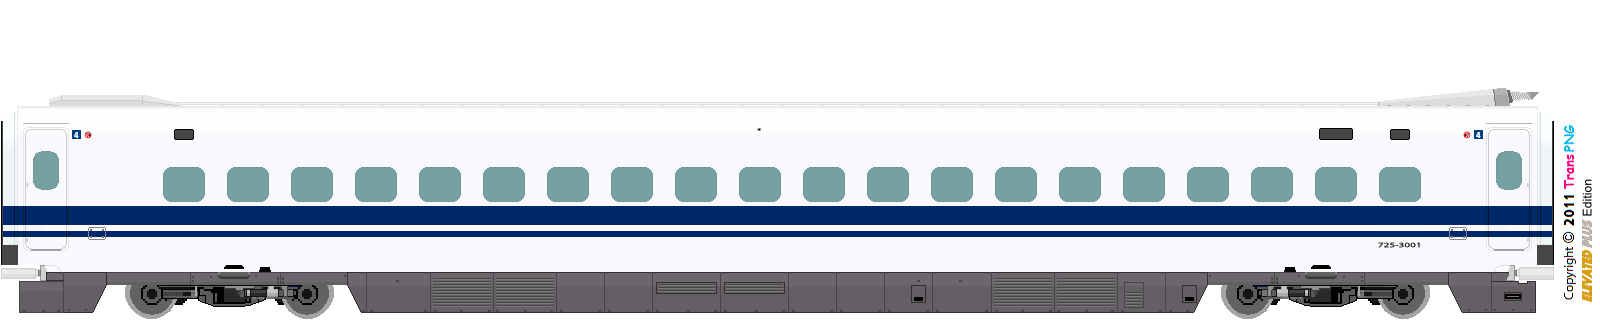 9012 - [9012] 西日本旅客鐵道 52287585753_fc48e4316a_o